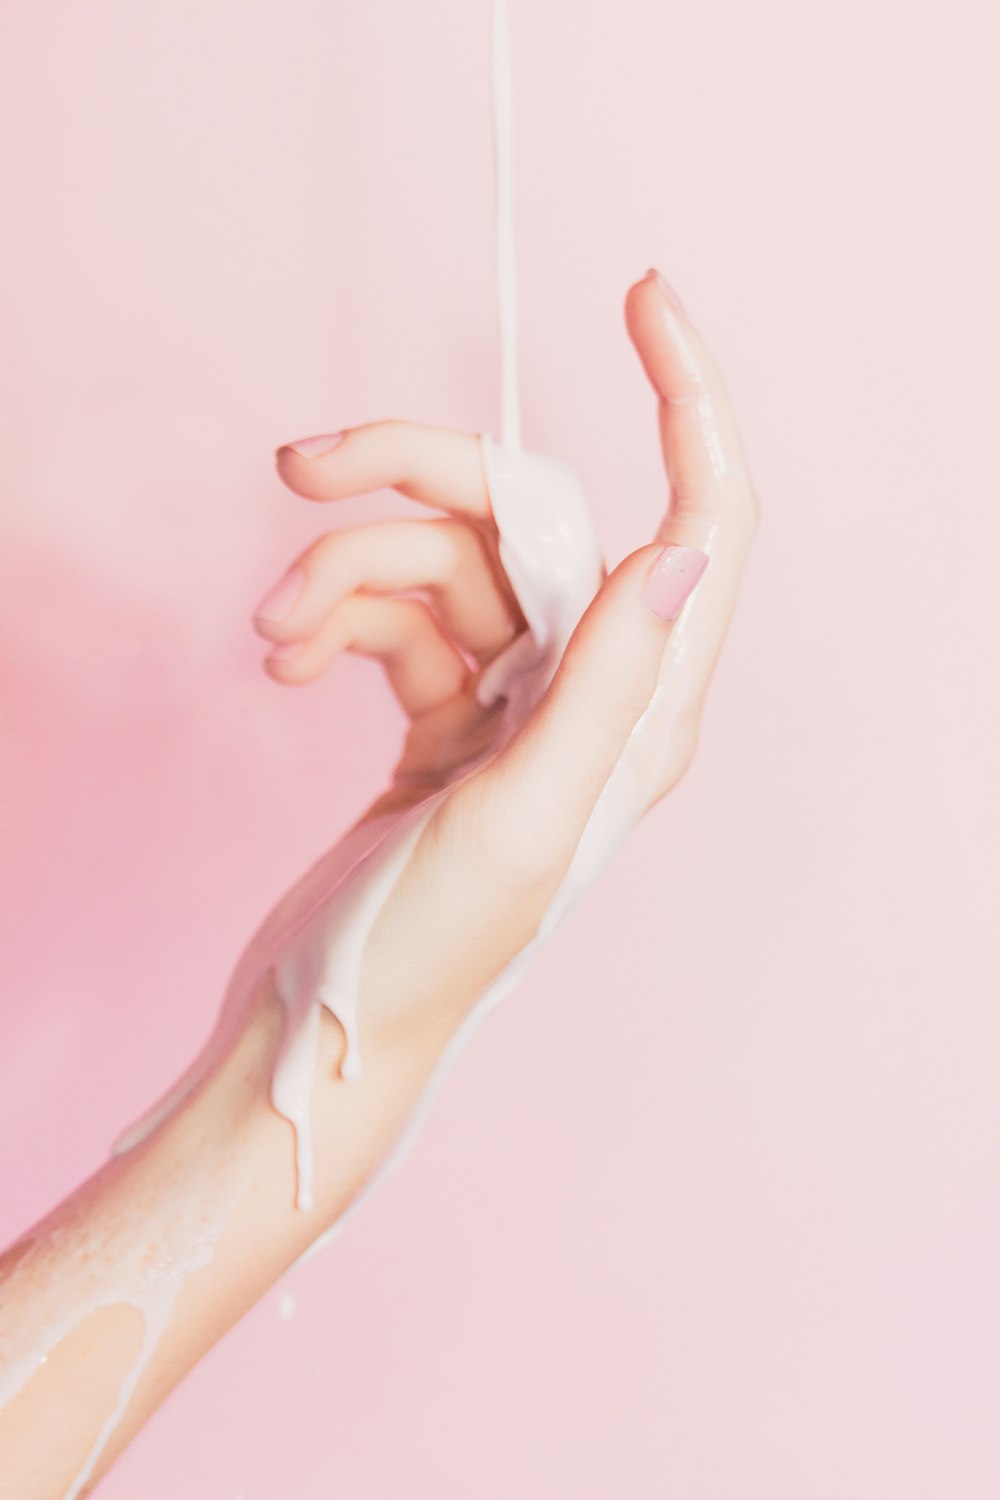 la main d’une femme tenant une bouteille de lotion